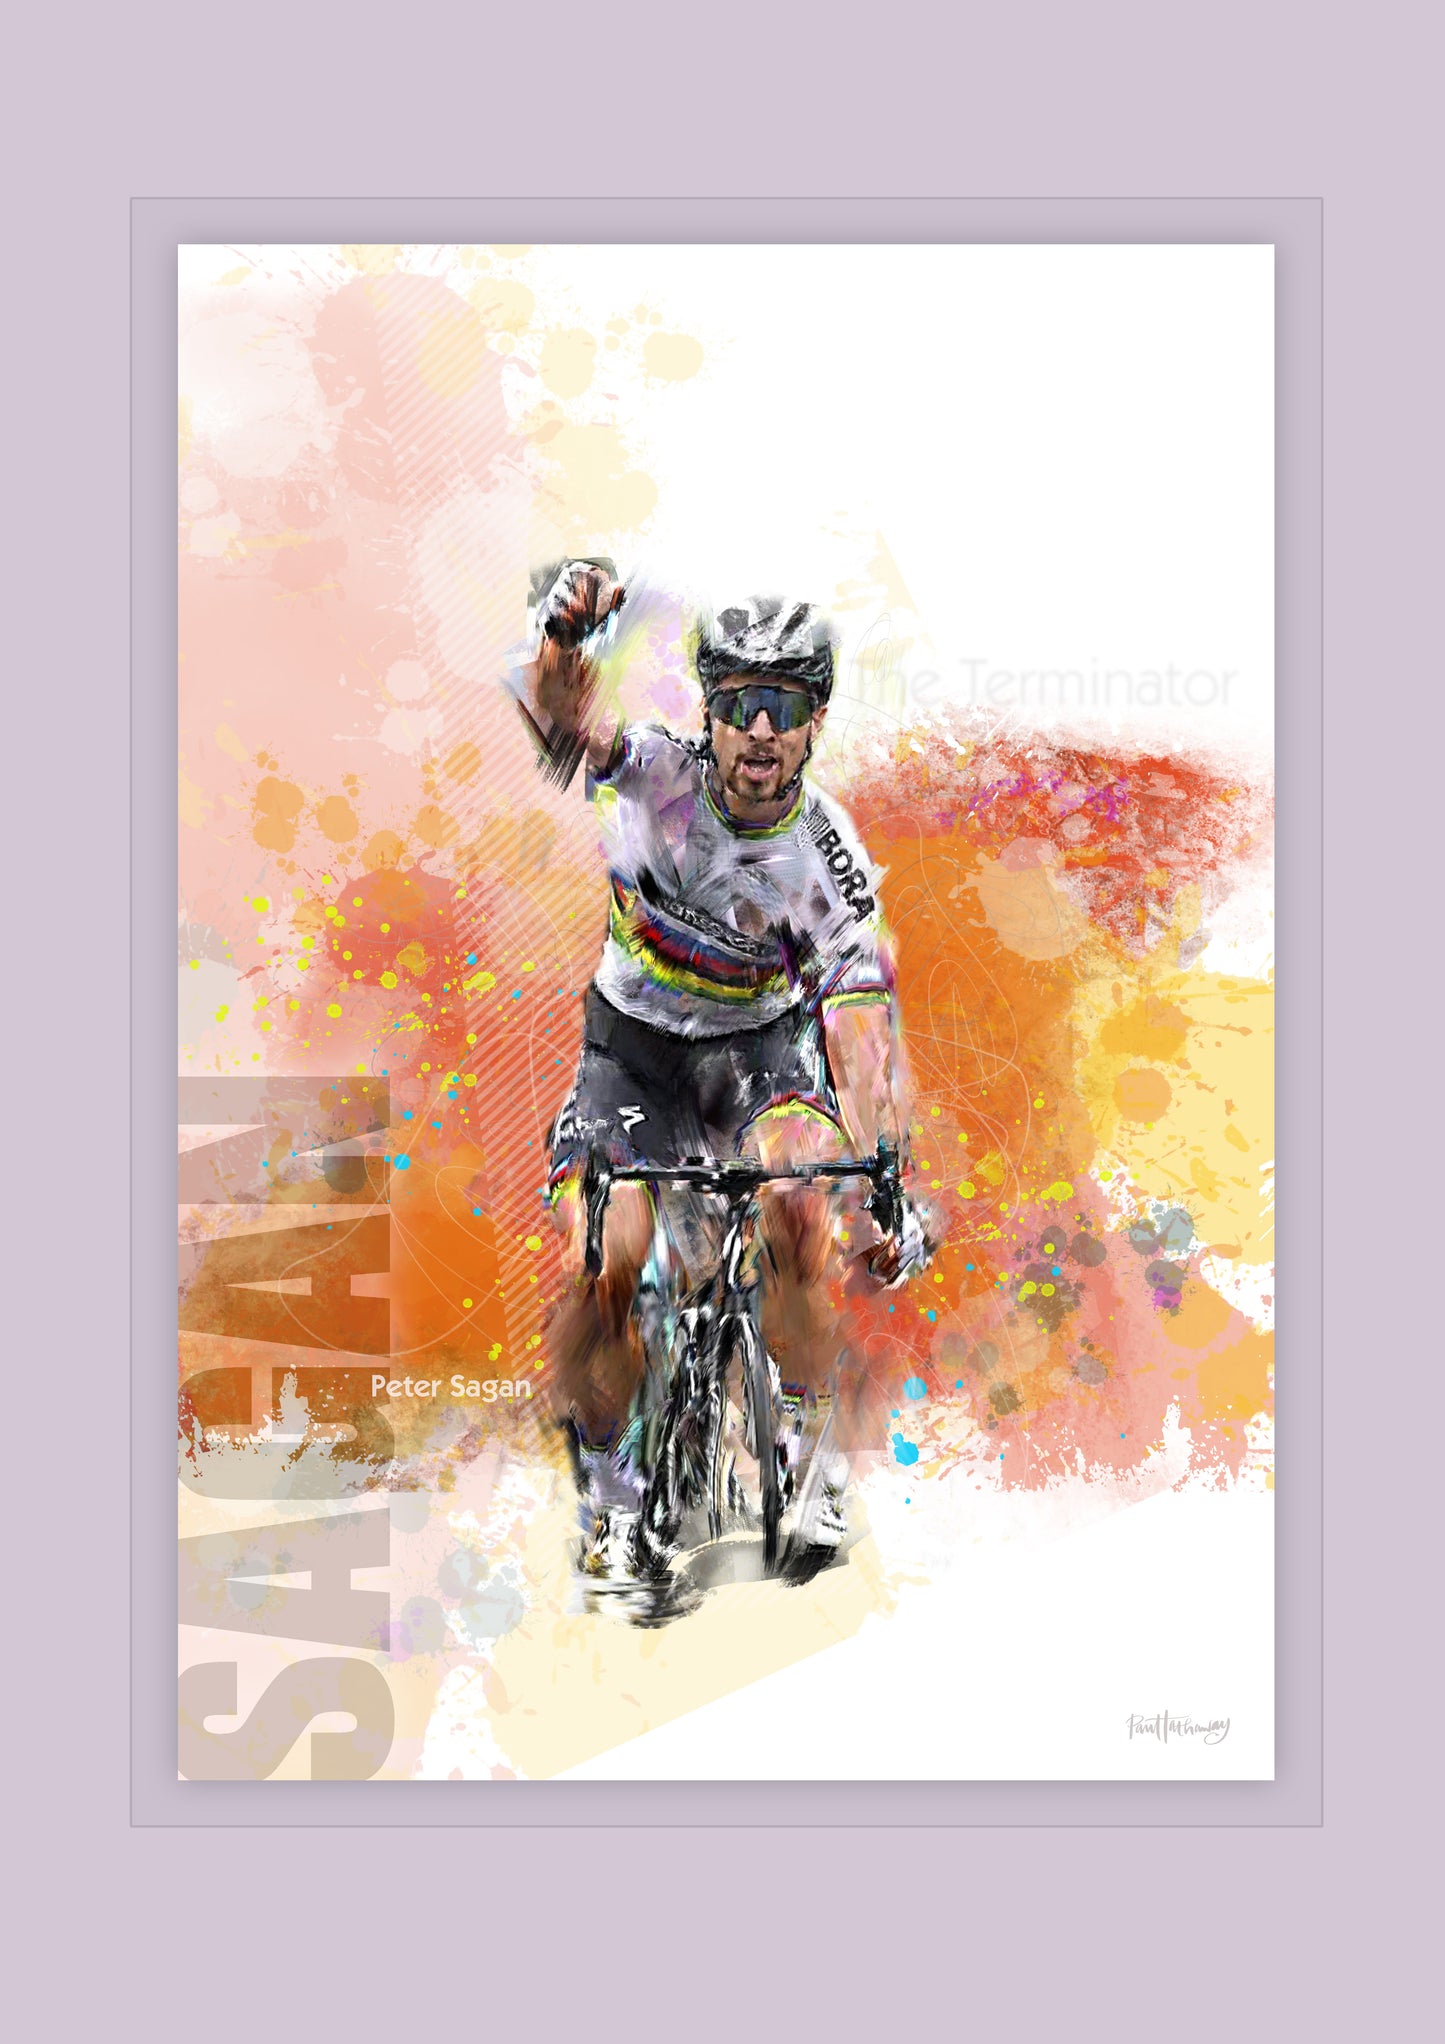 Peter Sagan - Cycling Art Print - Option 1